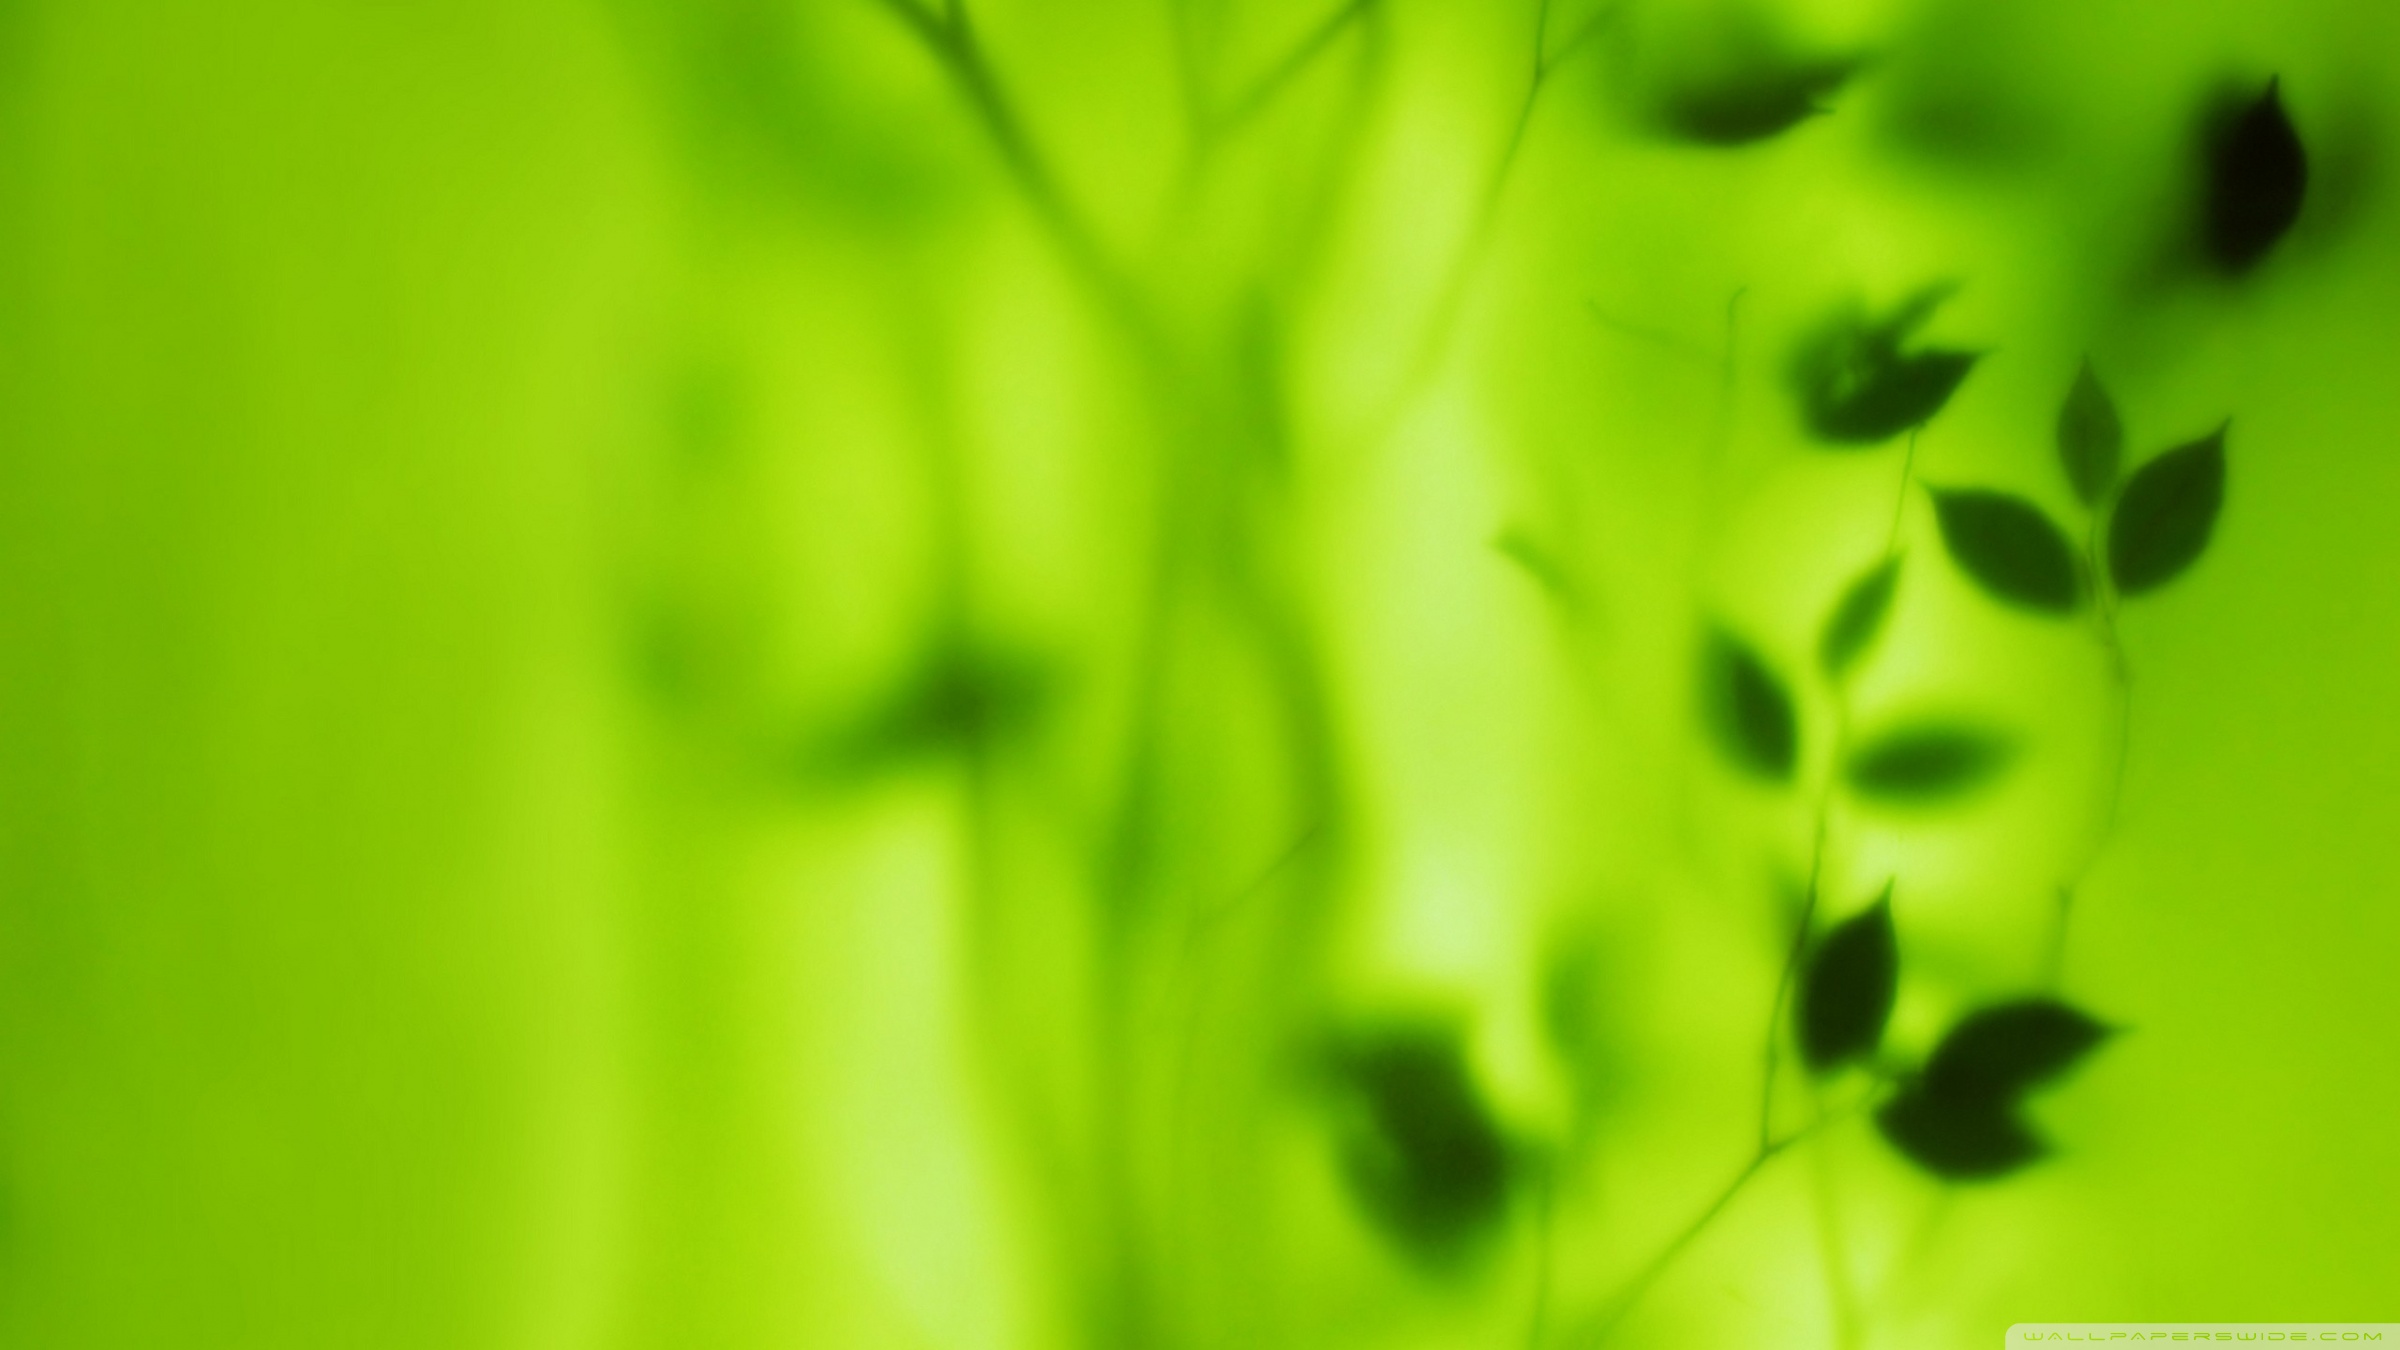 Blurred Green Leaves ❤ 4K HD Desktop Wallpaper for 4K Ultra HD TV ...